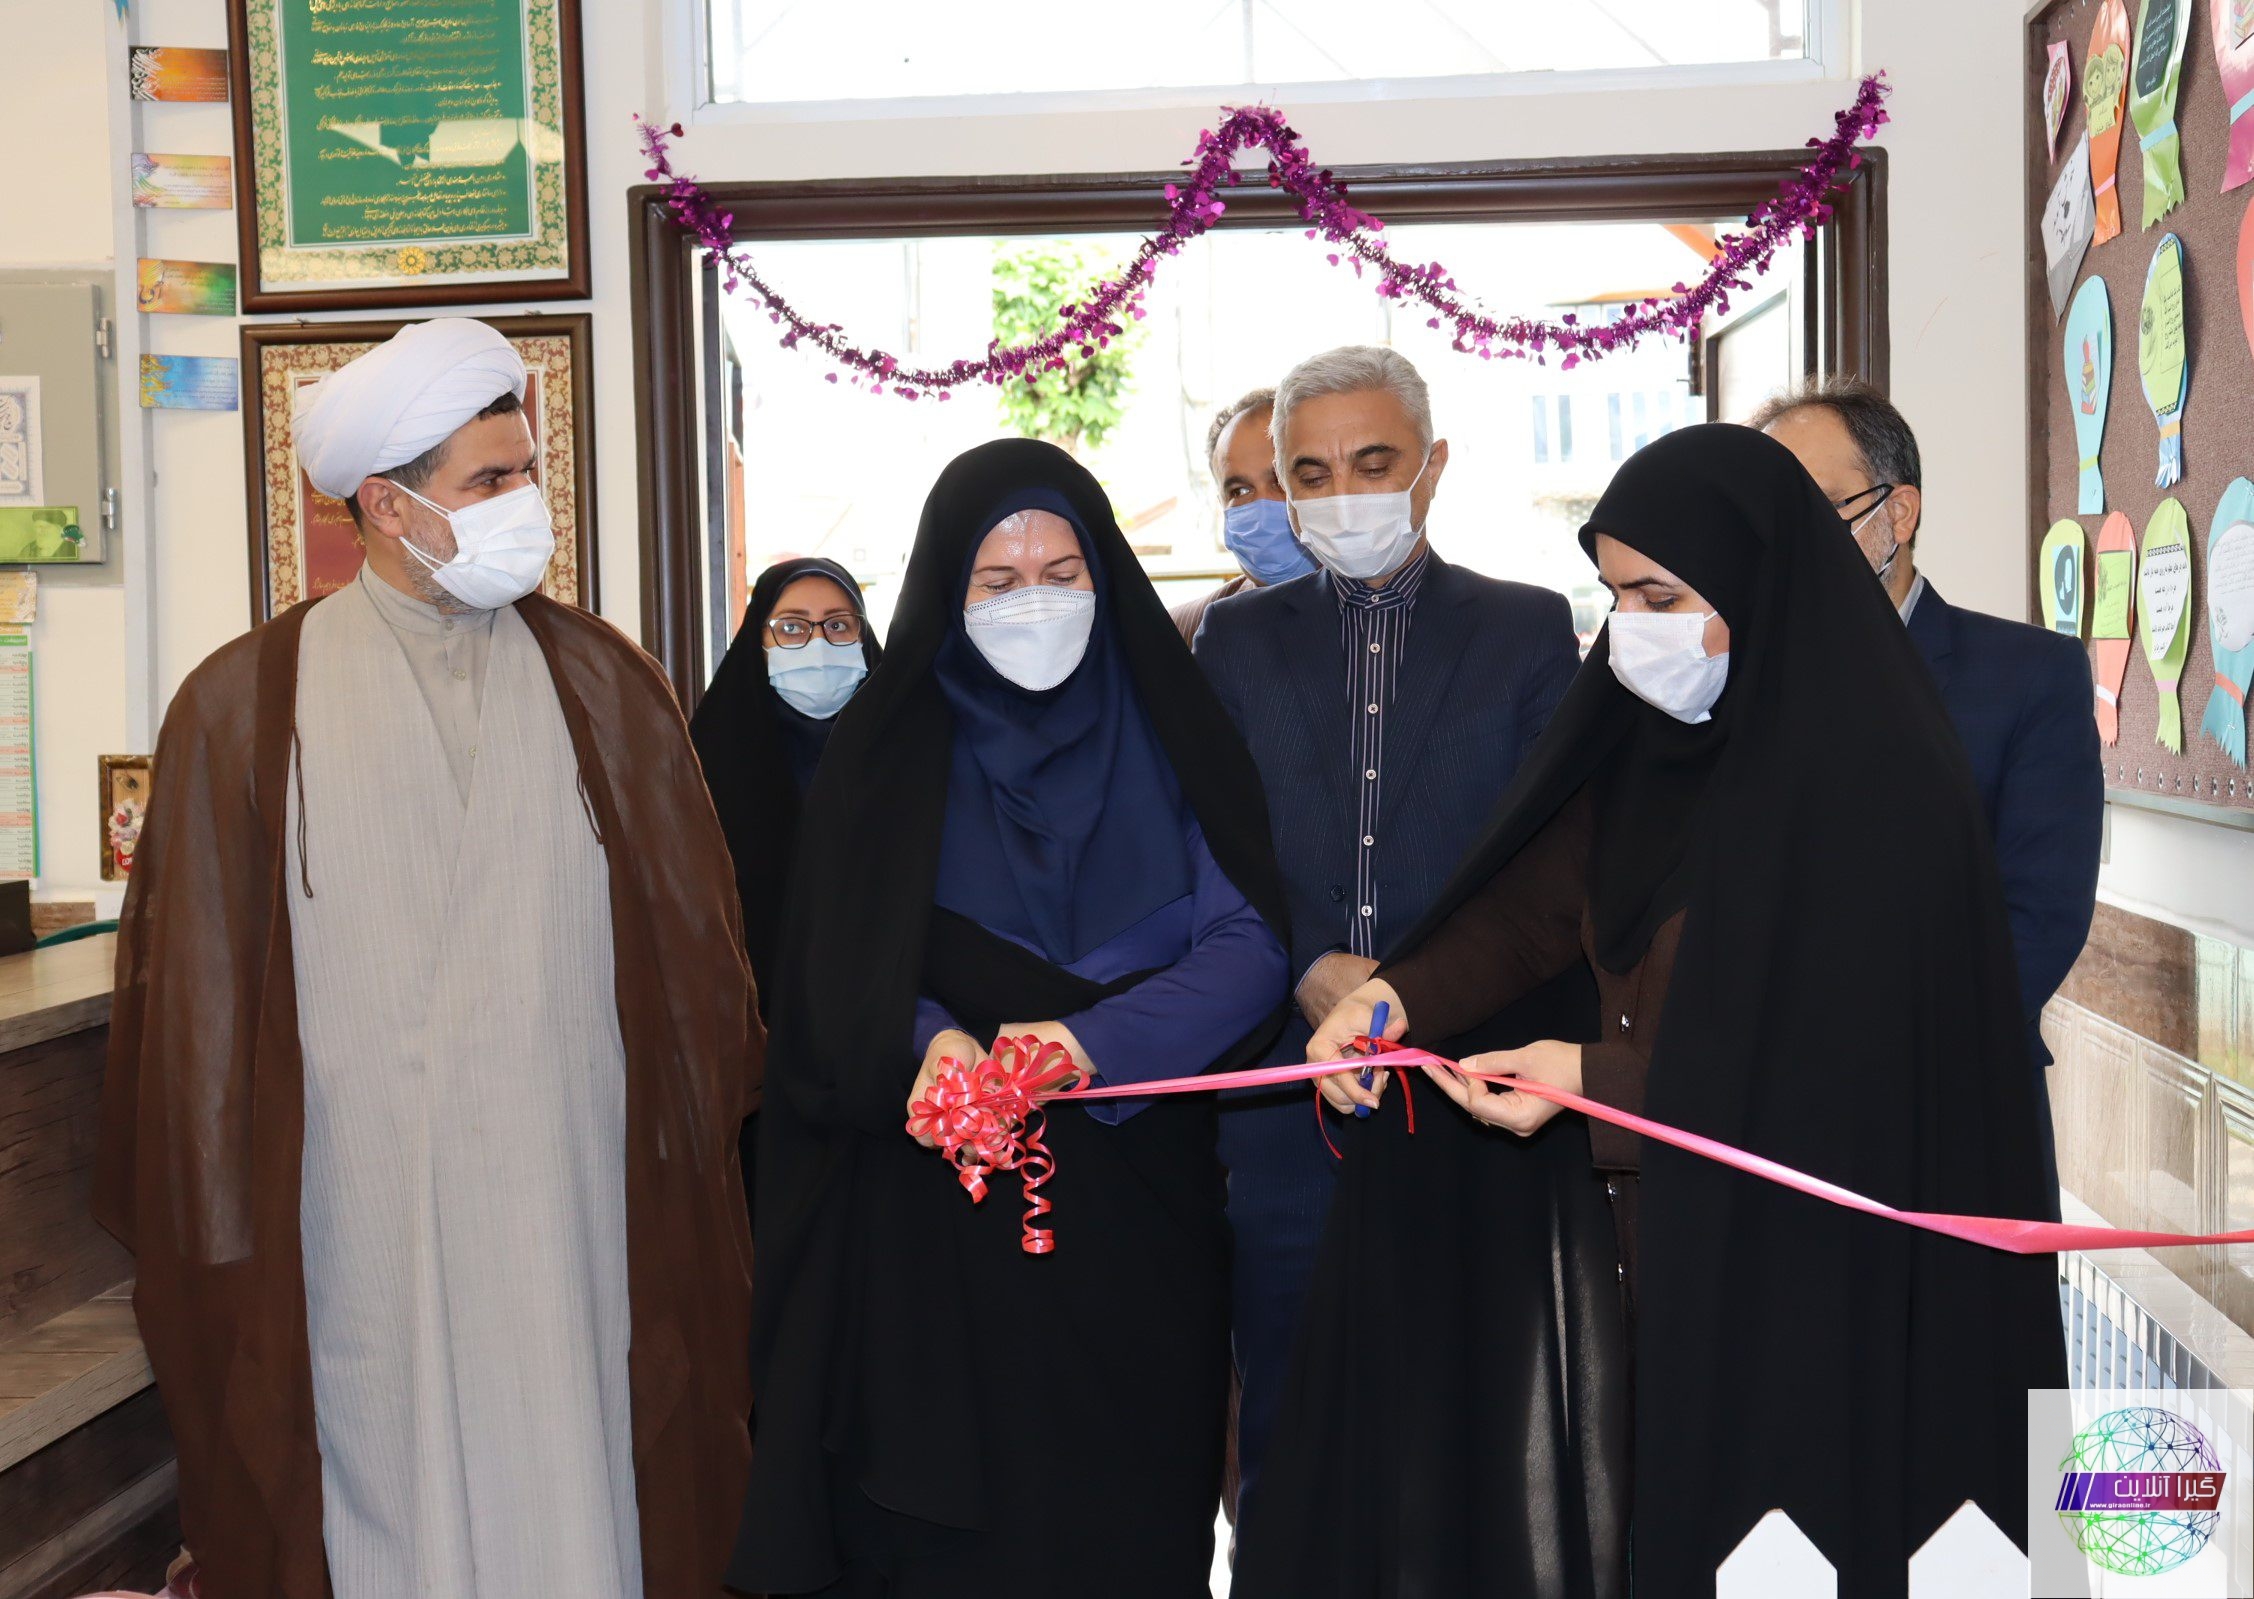 دومین کتابخانه ویژه مادر و کودک گیلان در صومعه سرا افتتاح شد